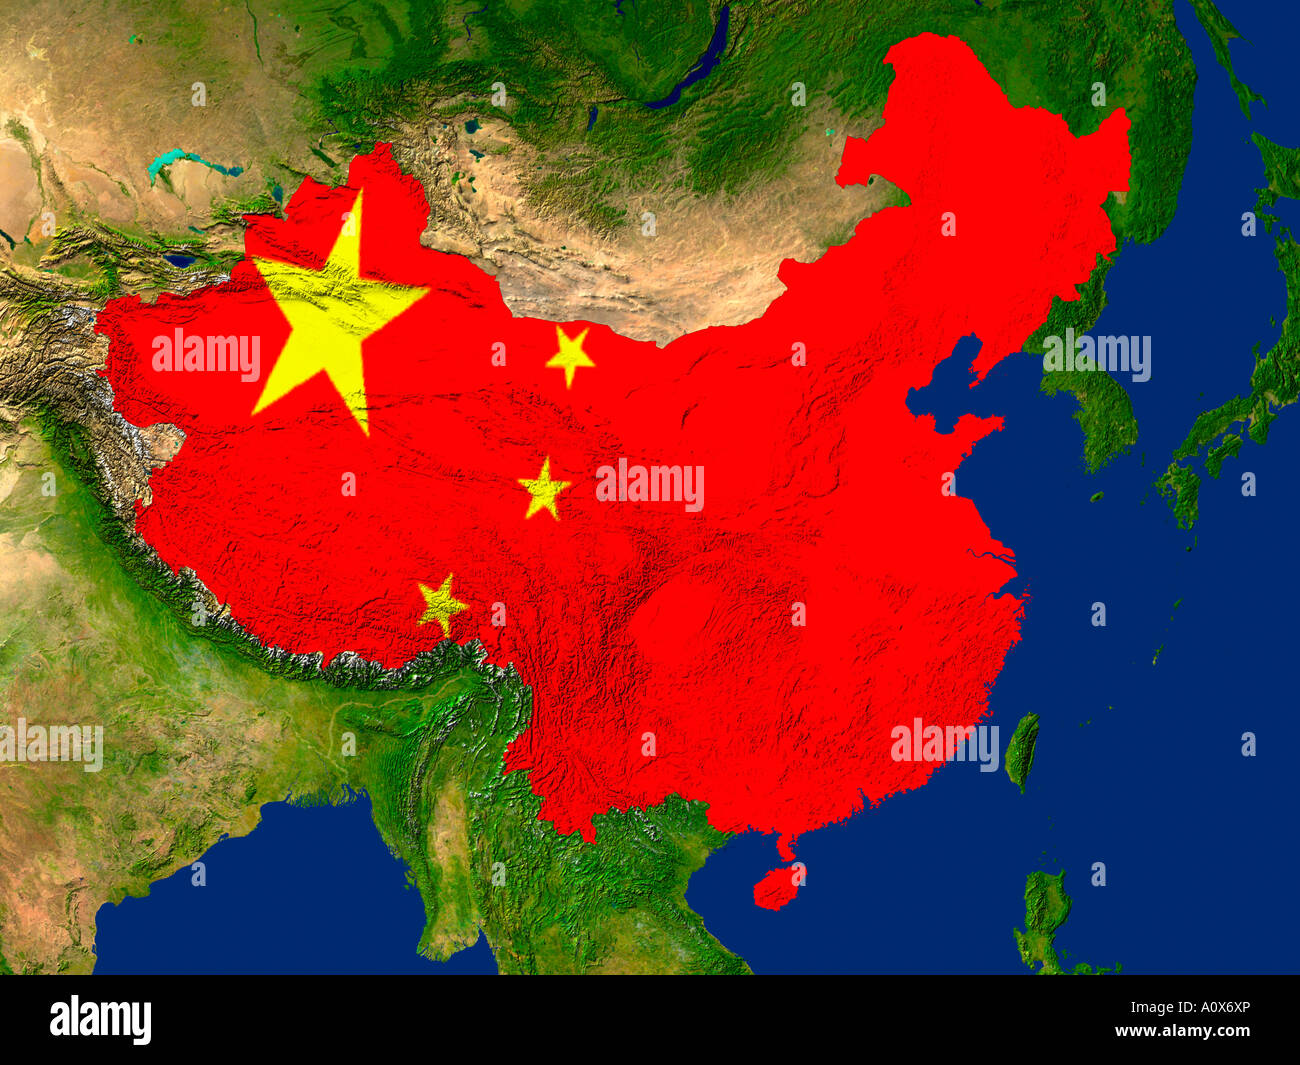 Image satellite de la Chine couverts par le drapeau de ce pays Banque D'Images